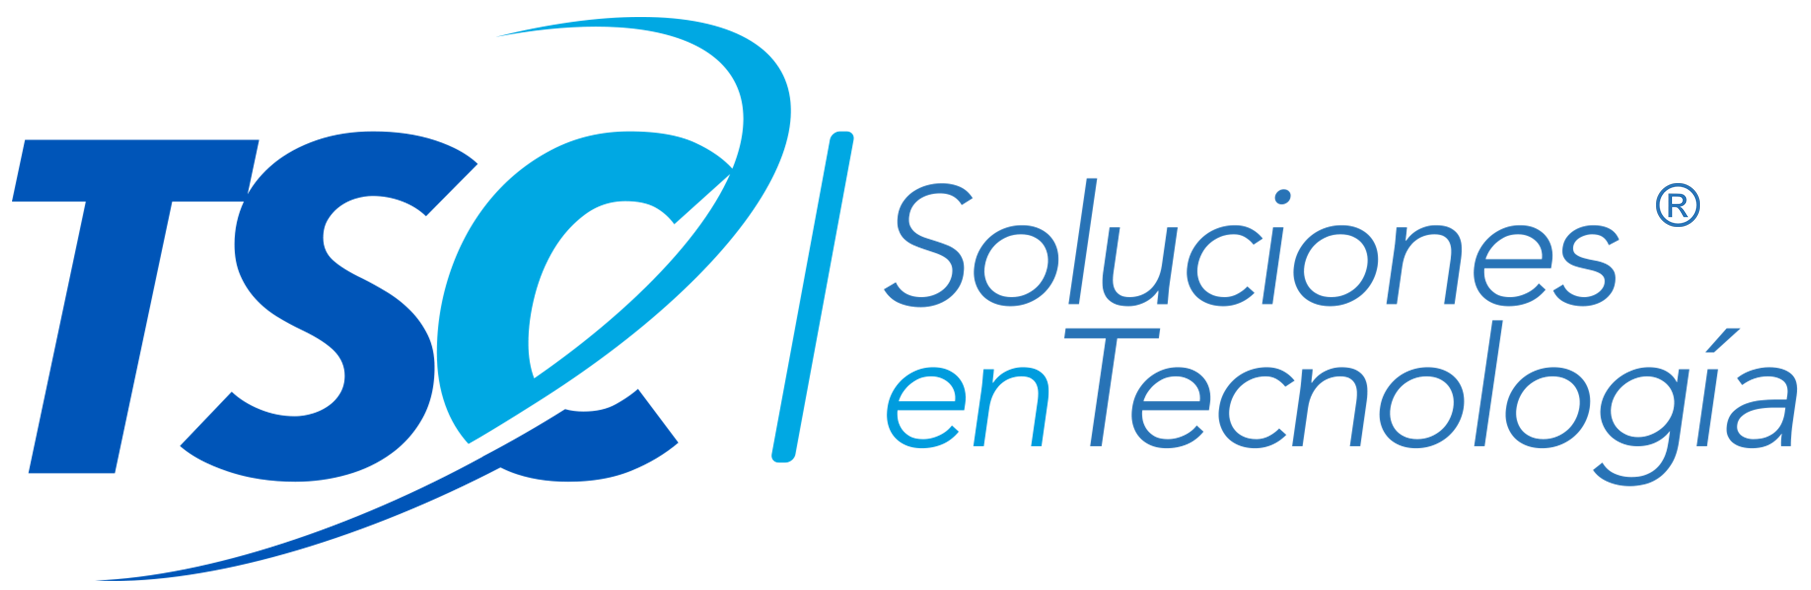 Logo TSC Soluciones en Tecnología